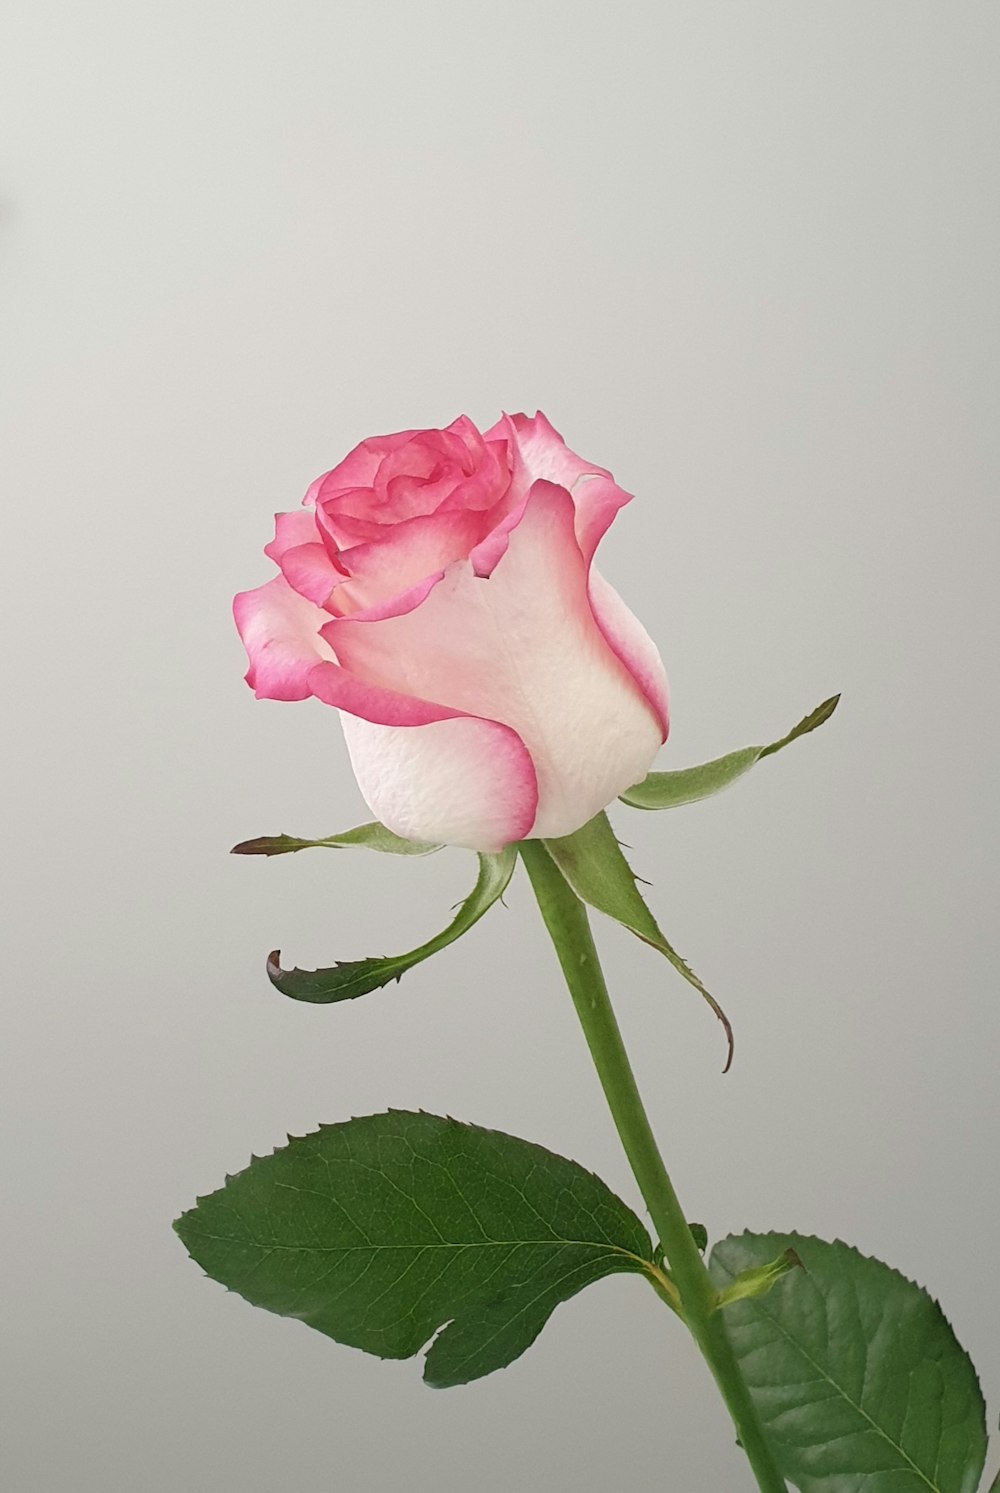 クローズアップ写真でピンクのバラ